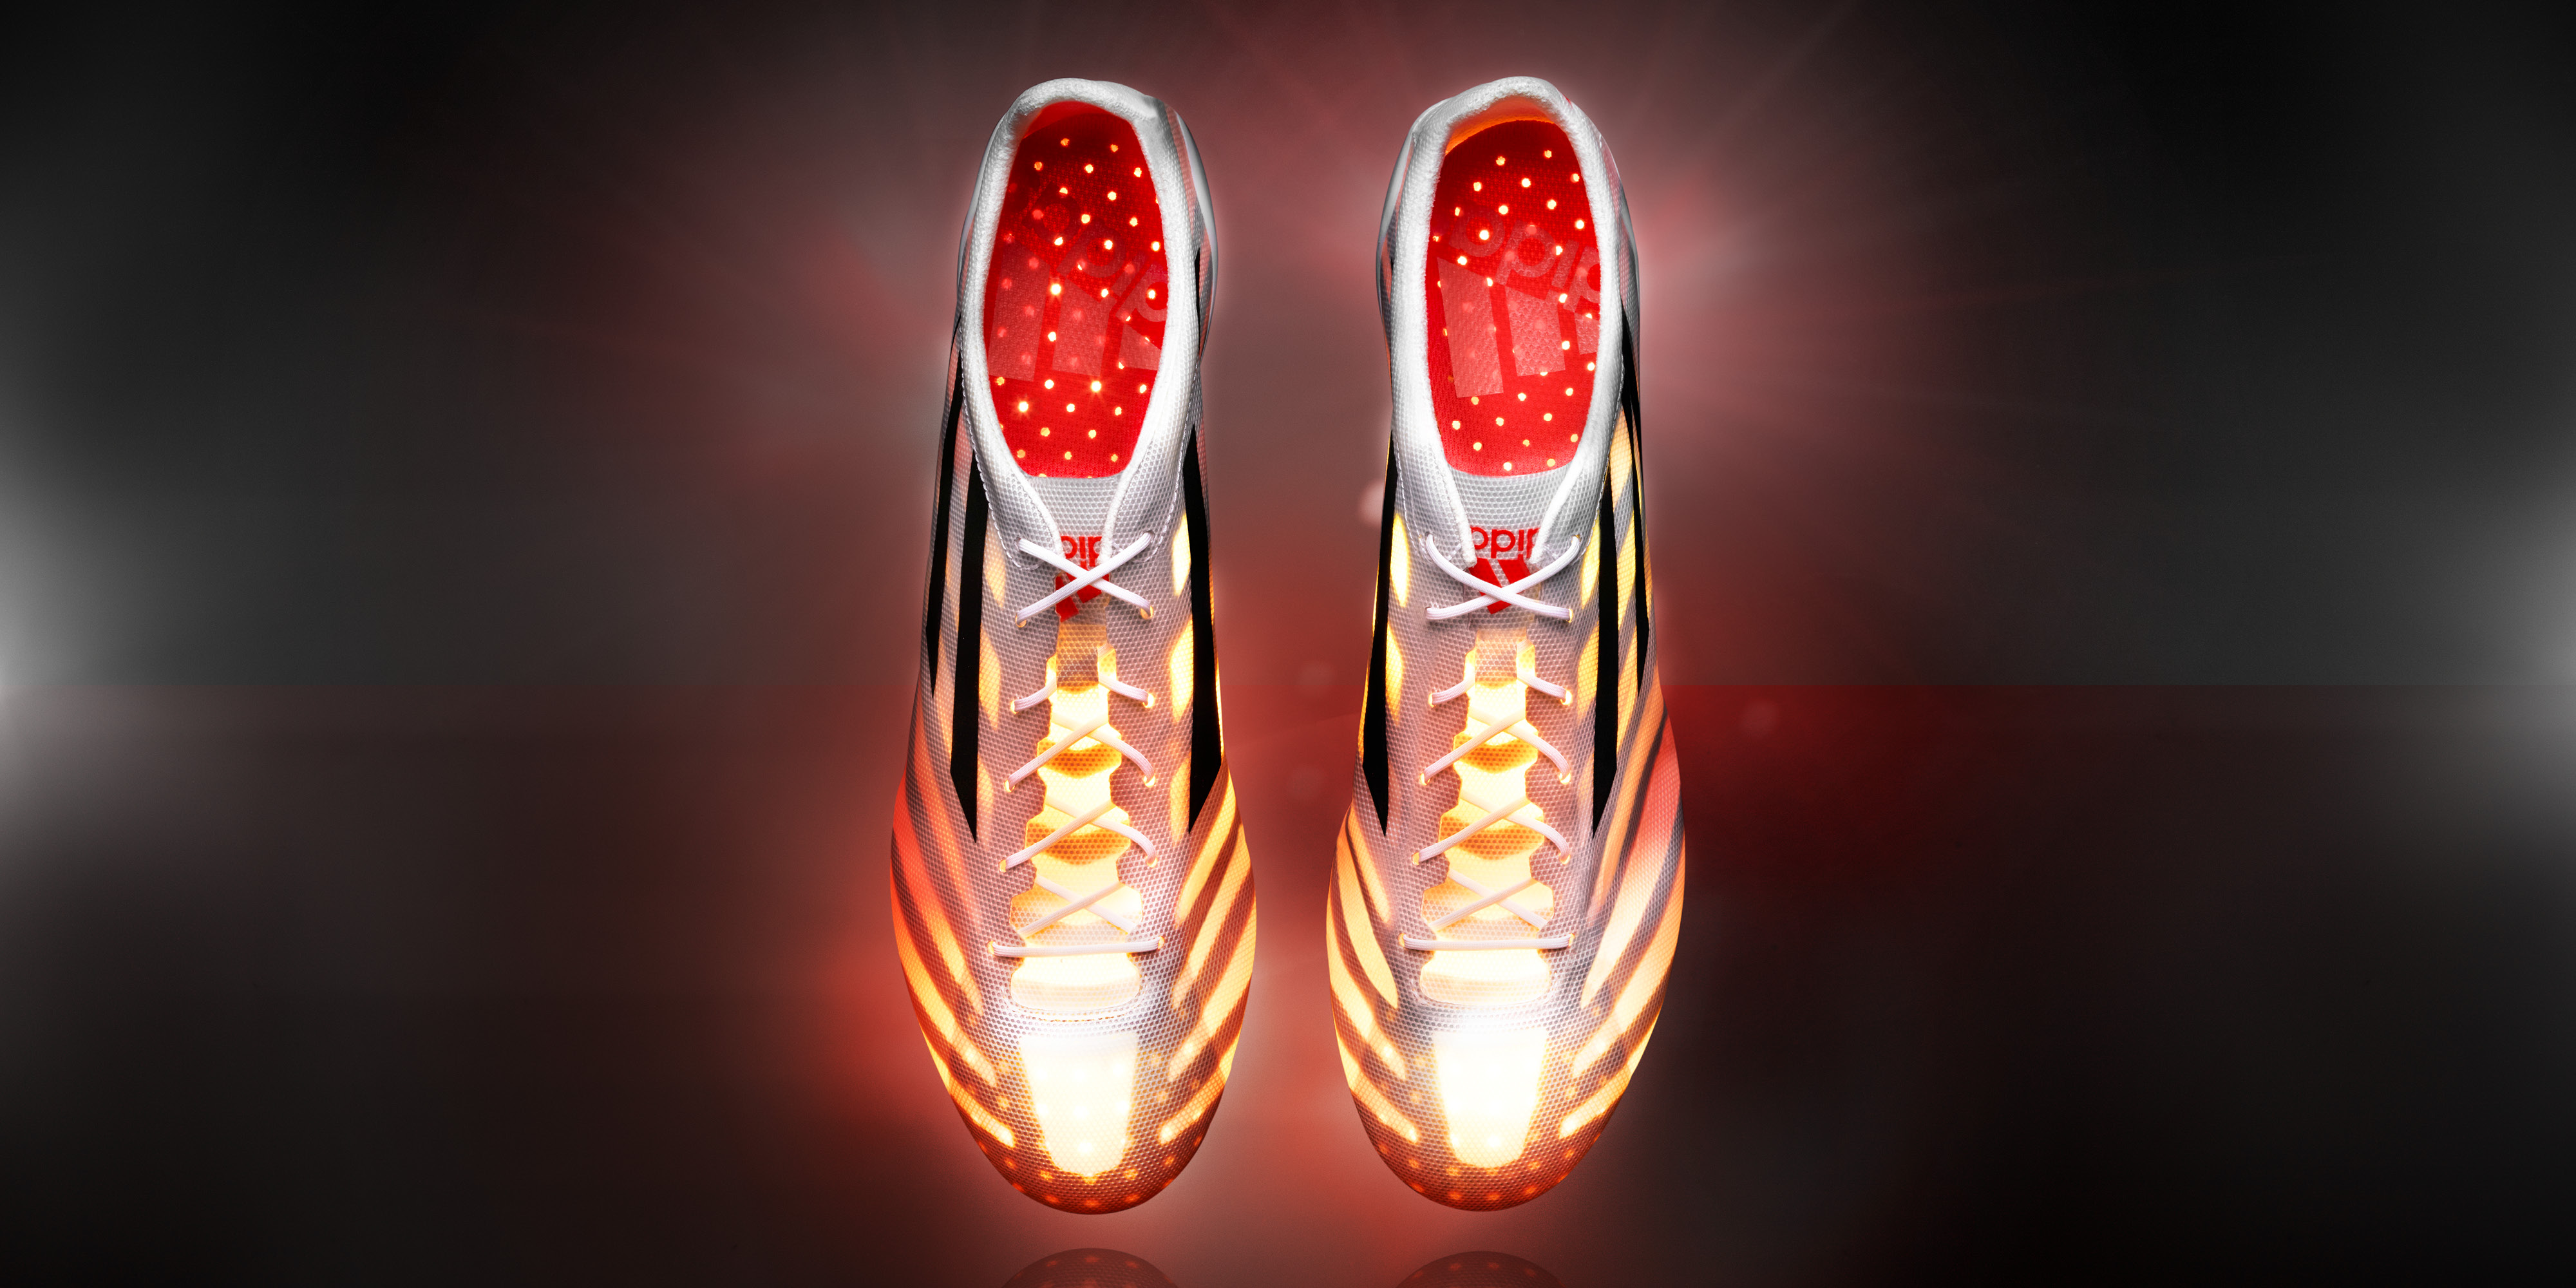 Adidas lance la chaussure de football la plus légère jamais conçue